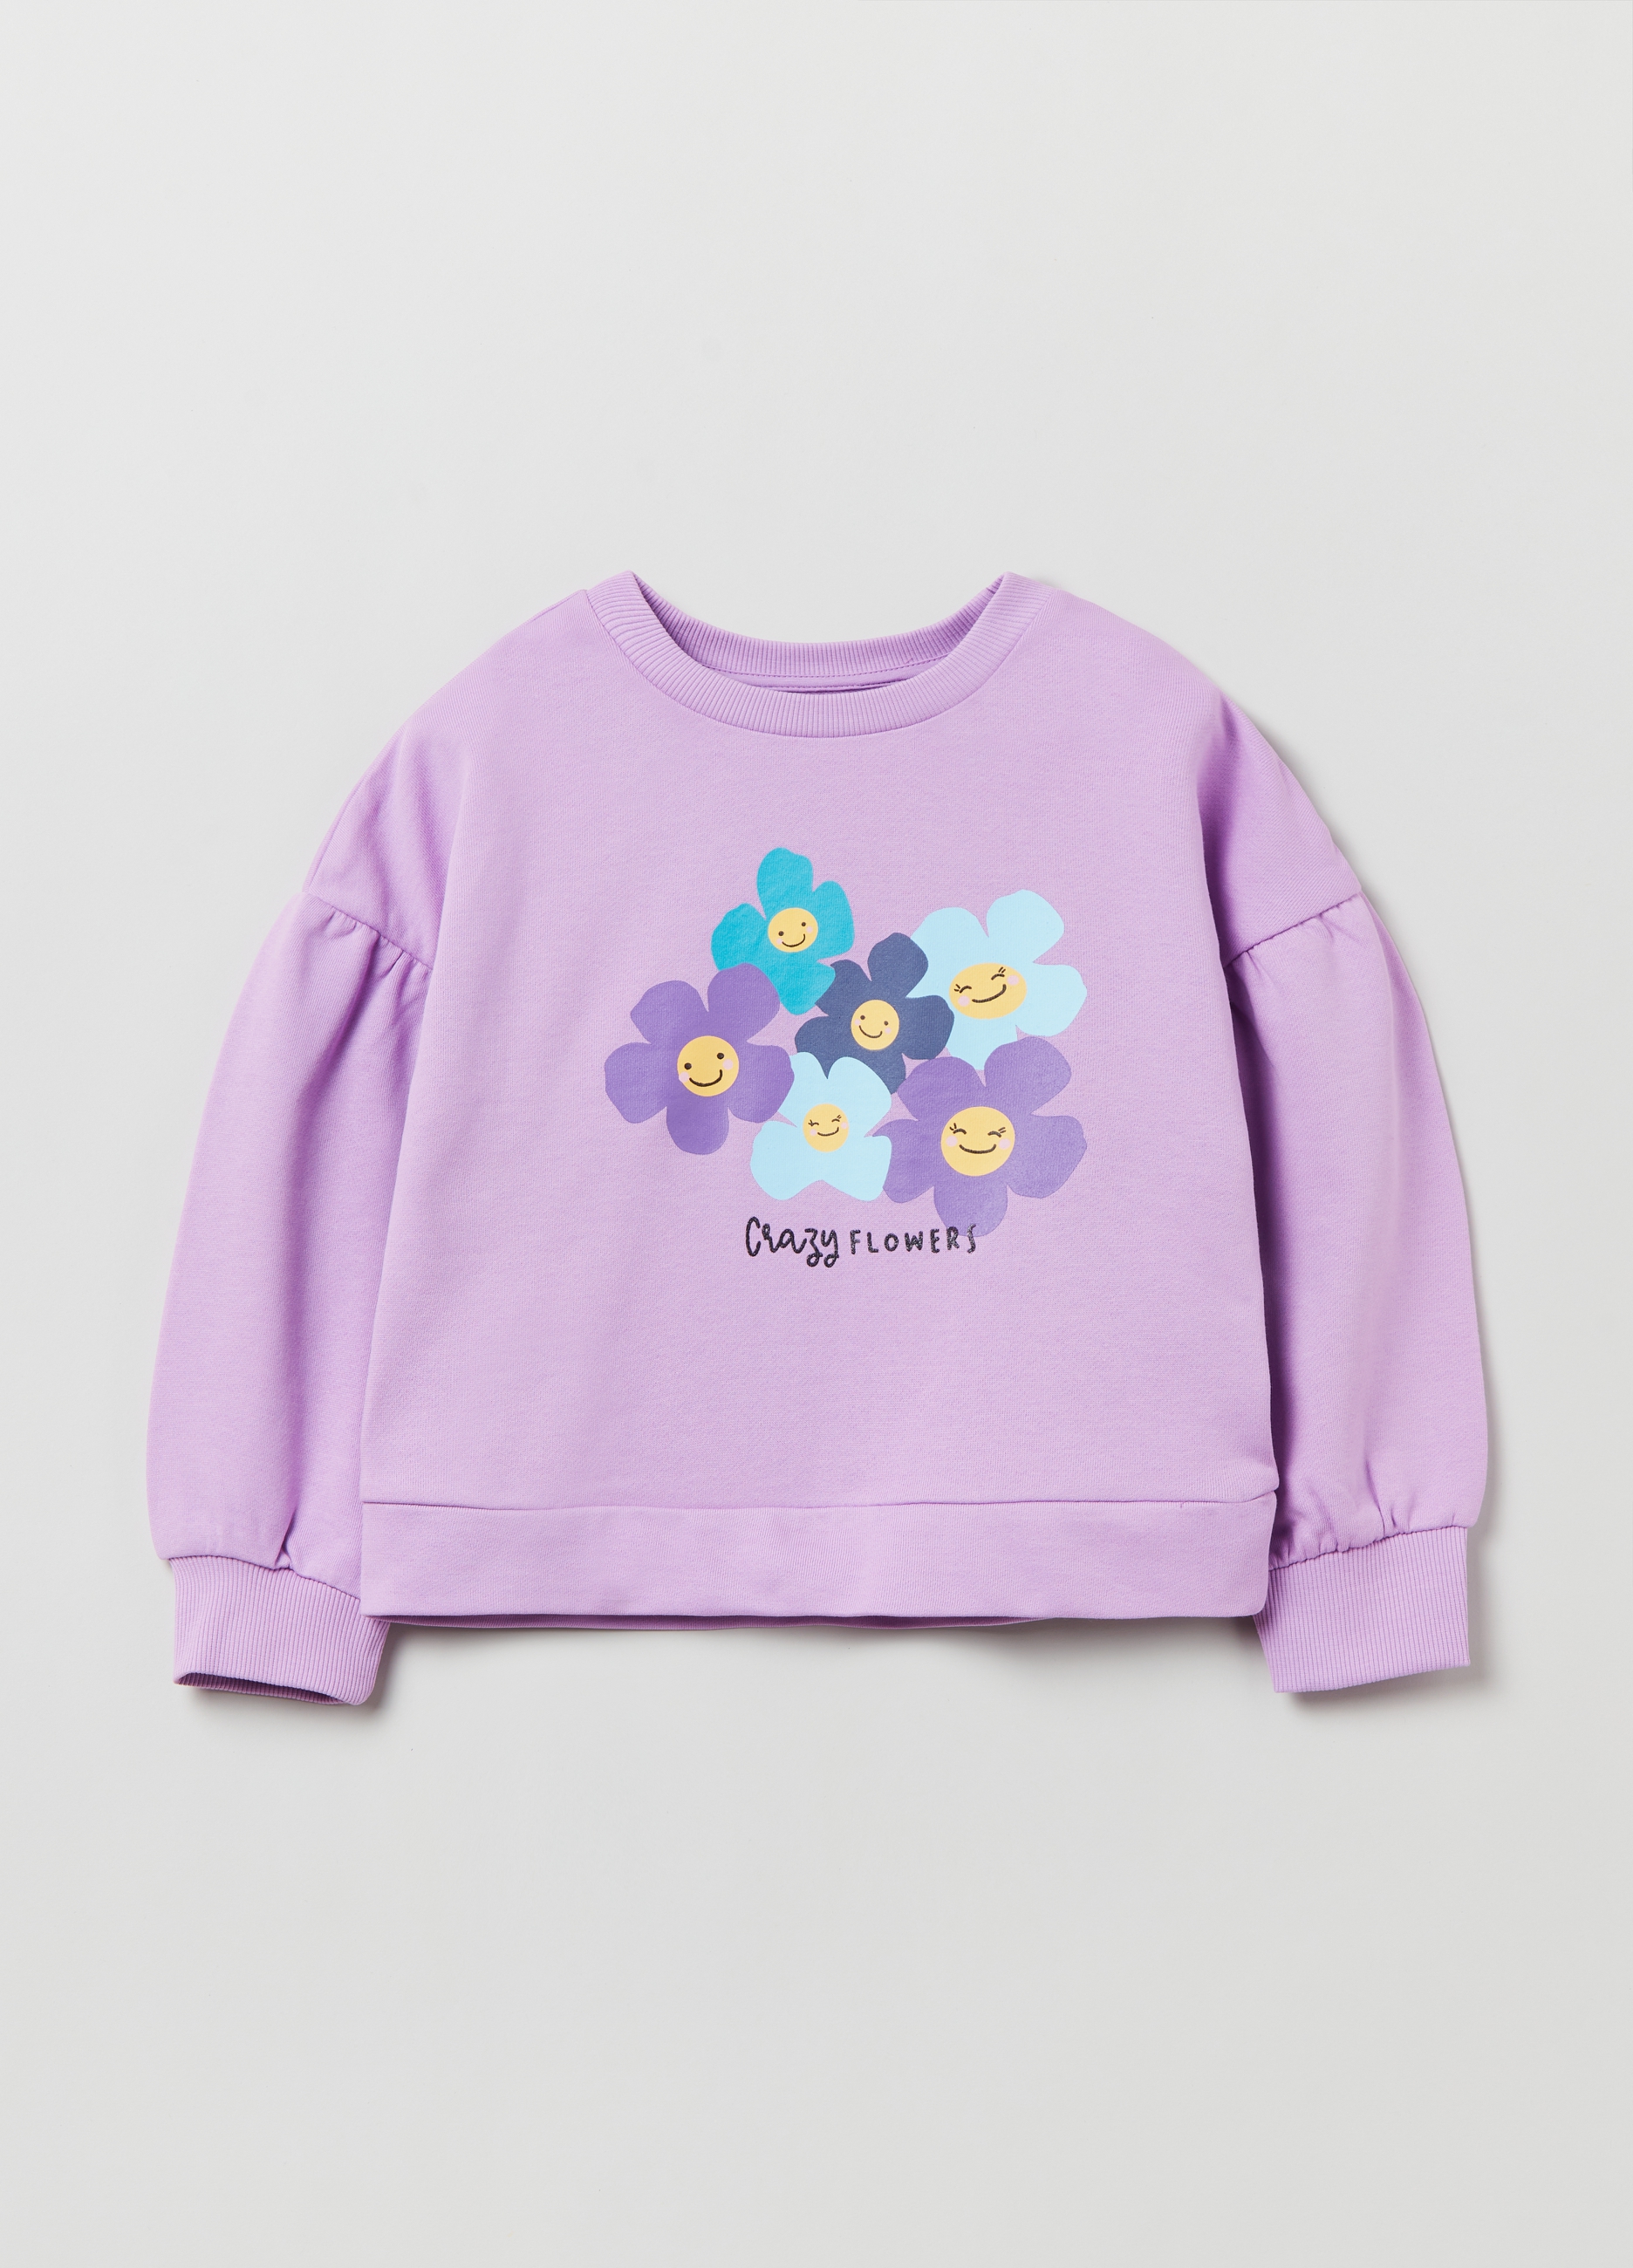 Фуфайка OVS для девочек, фиолетовая, 5-6 лет, 1893089 комплект для девочек фуфайка трикотажная футболка шорты текстильные